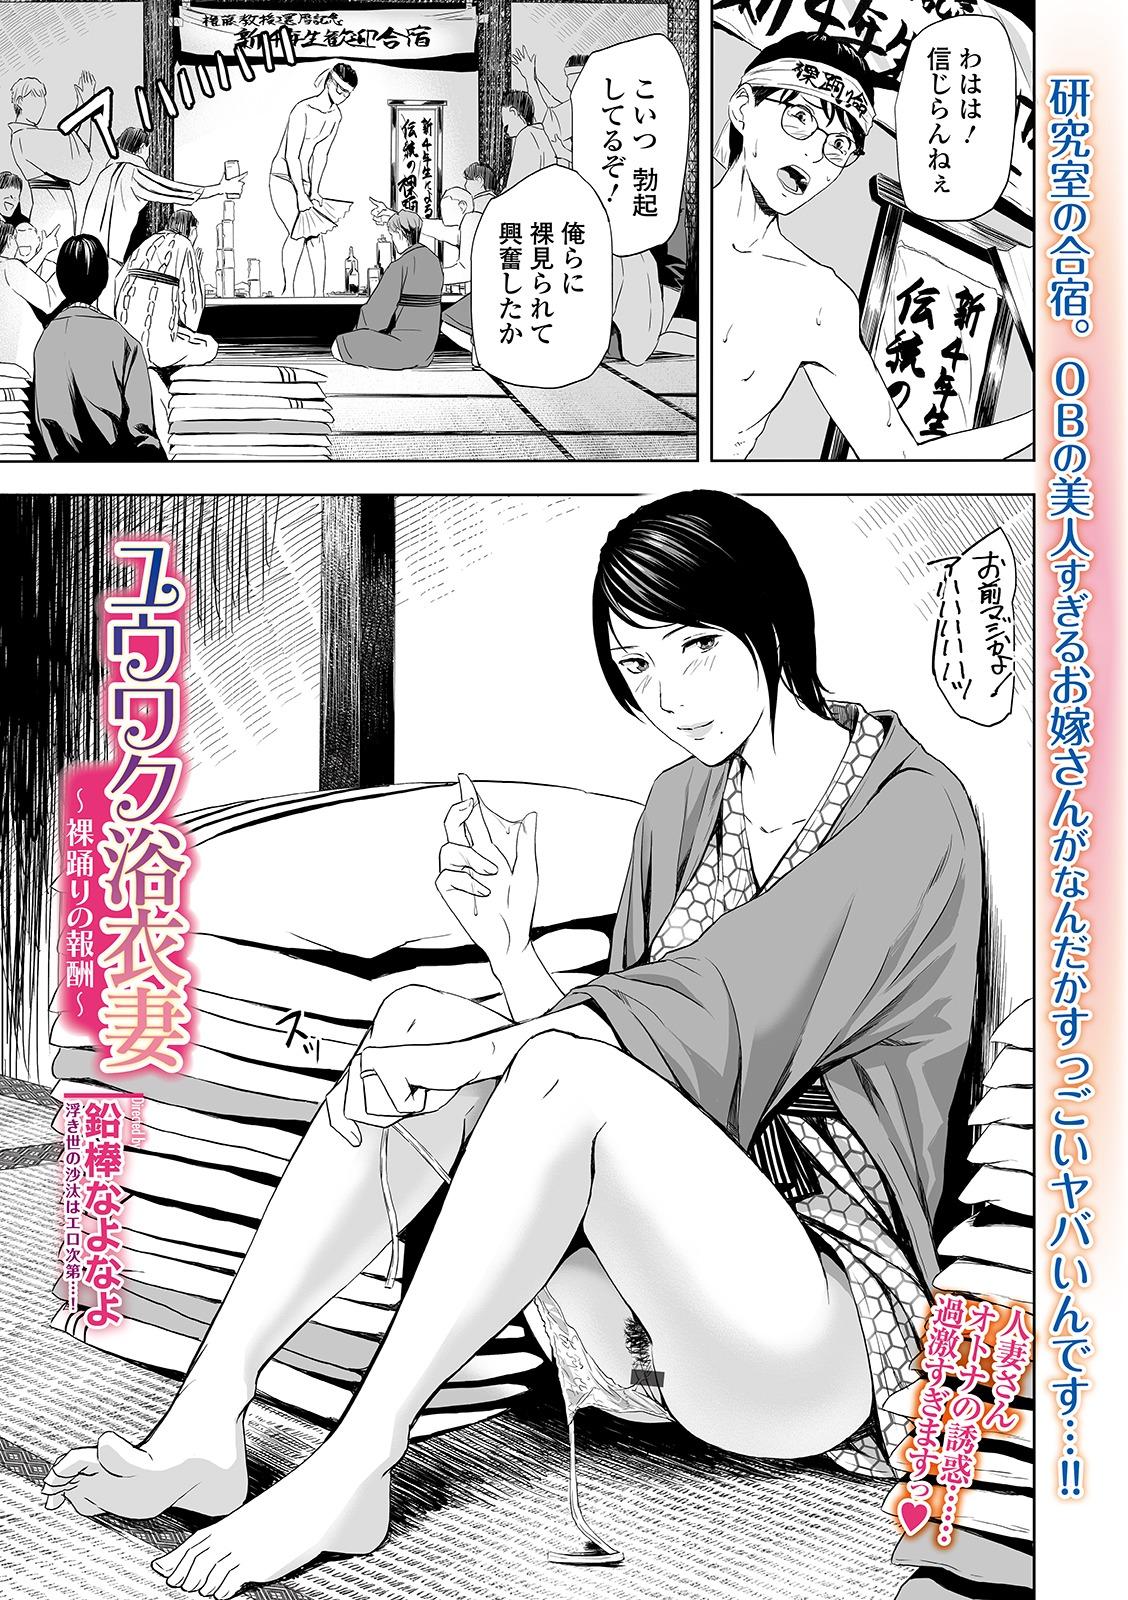 Web Comic Toutetsu Vol. 46 48